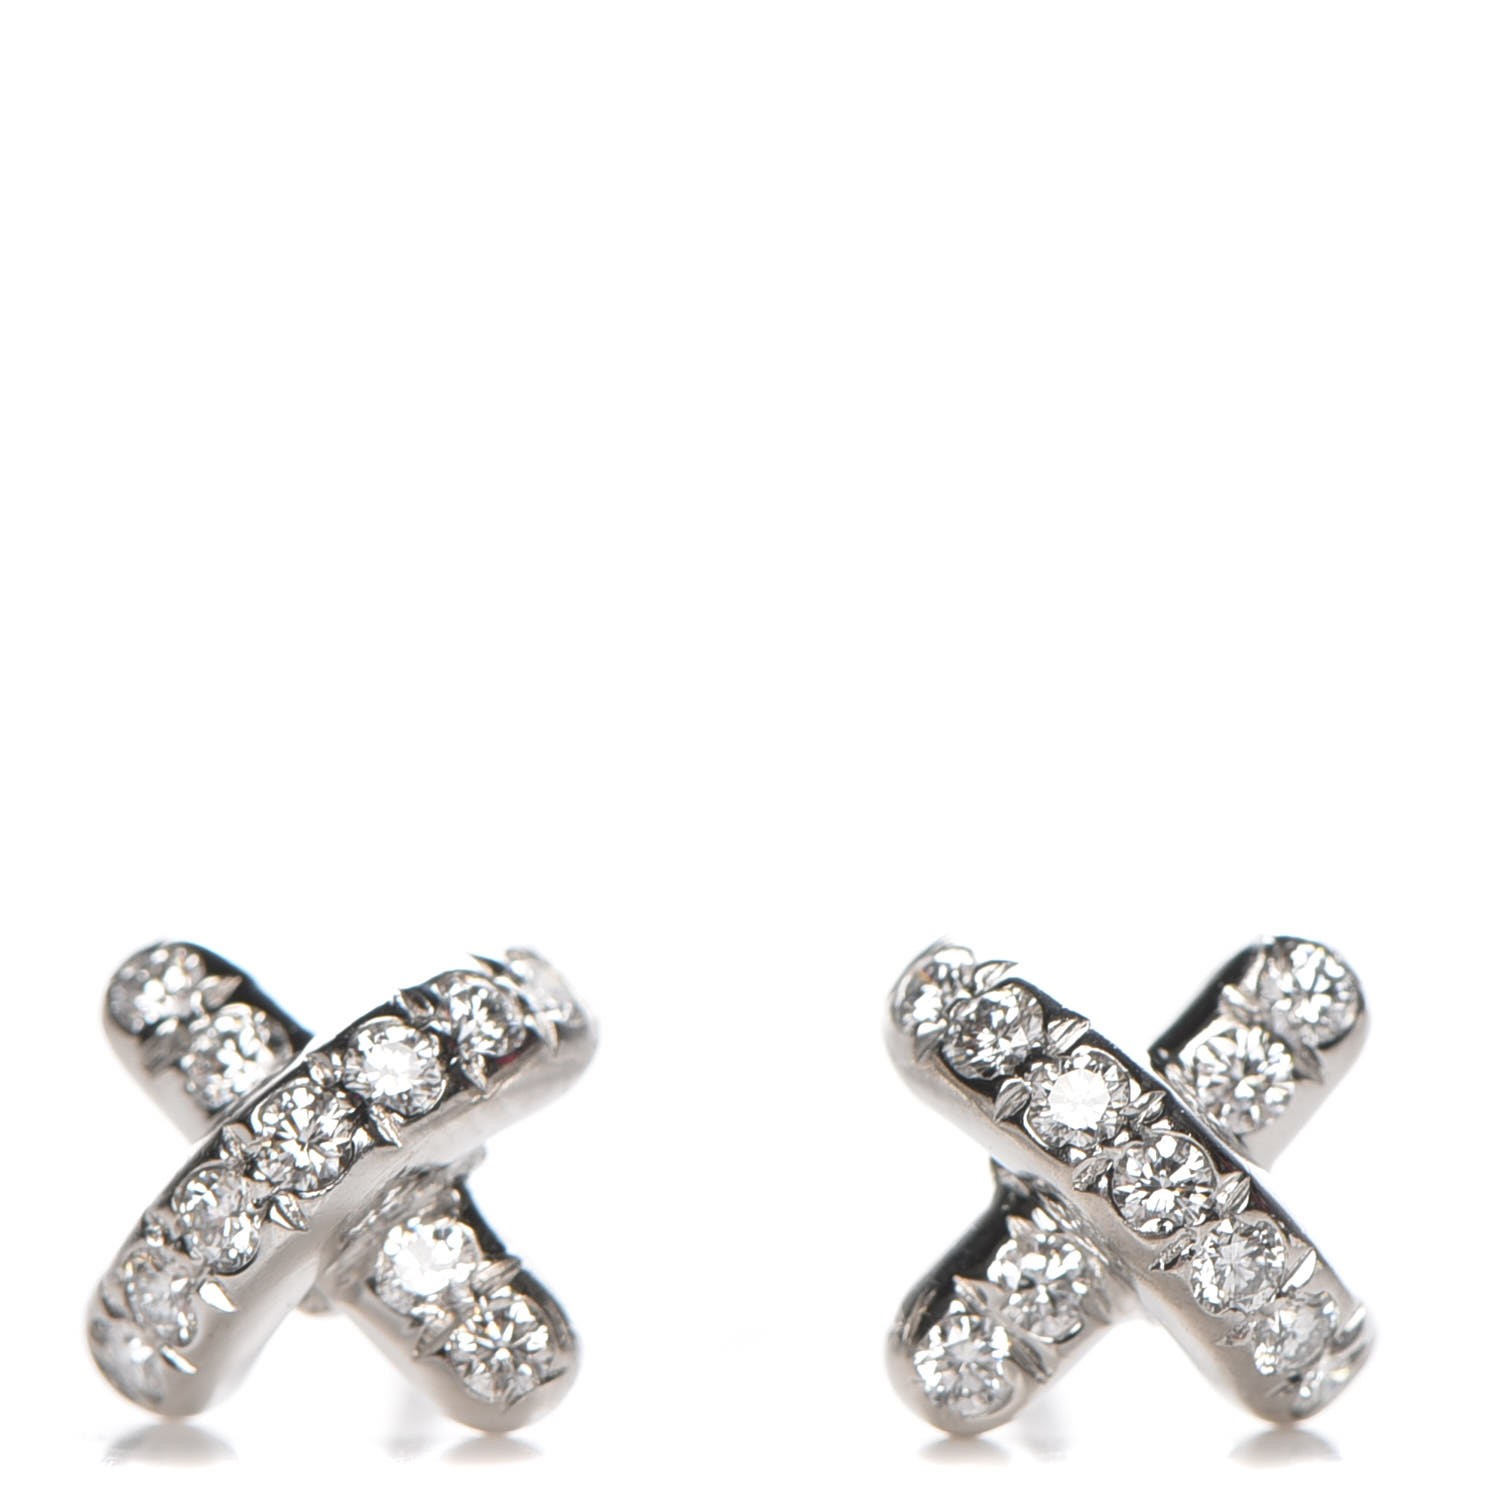 tiffany cross earrings